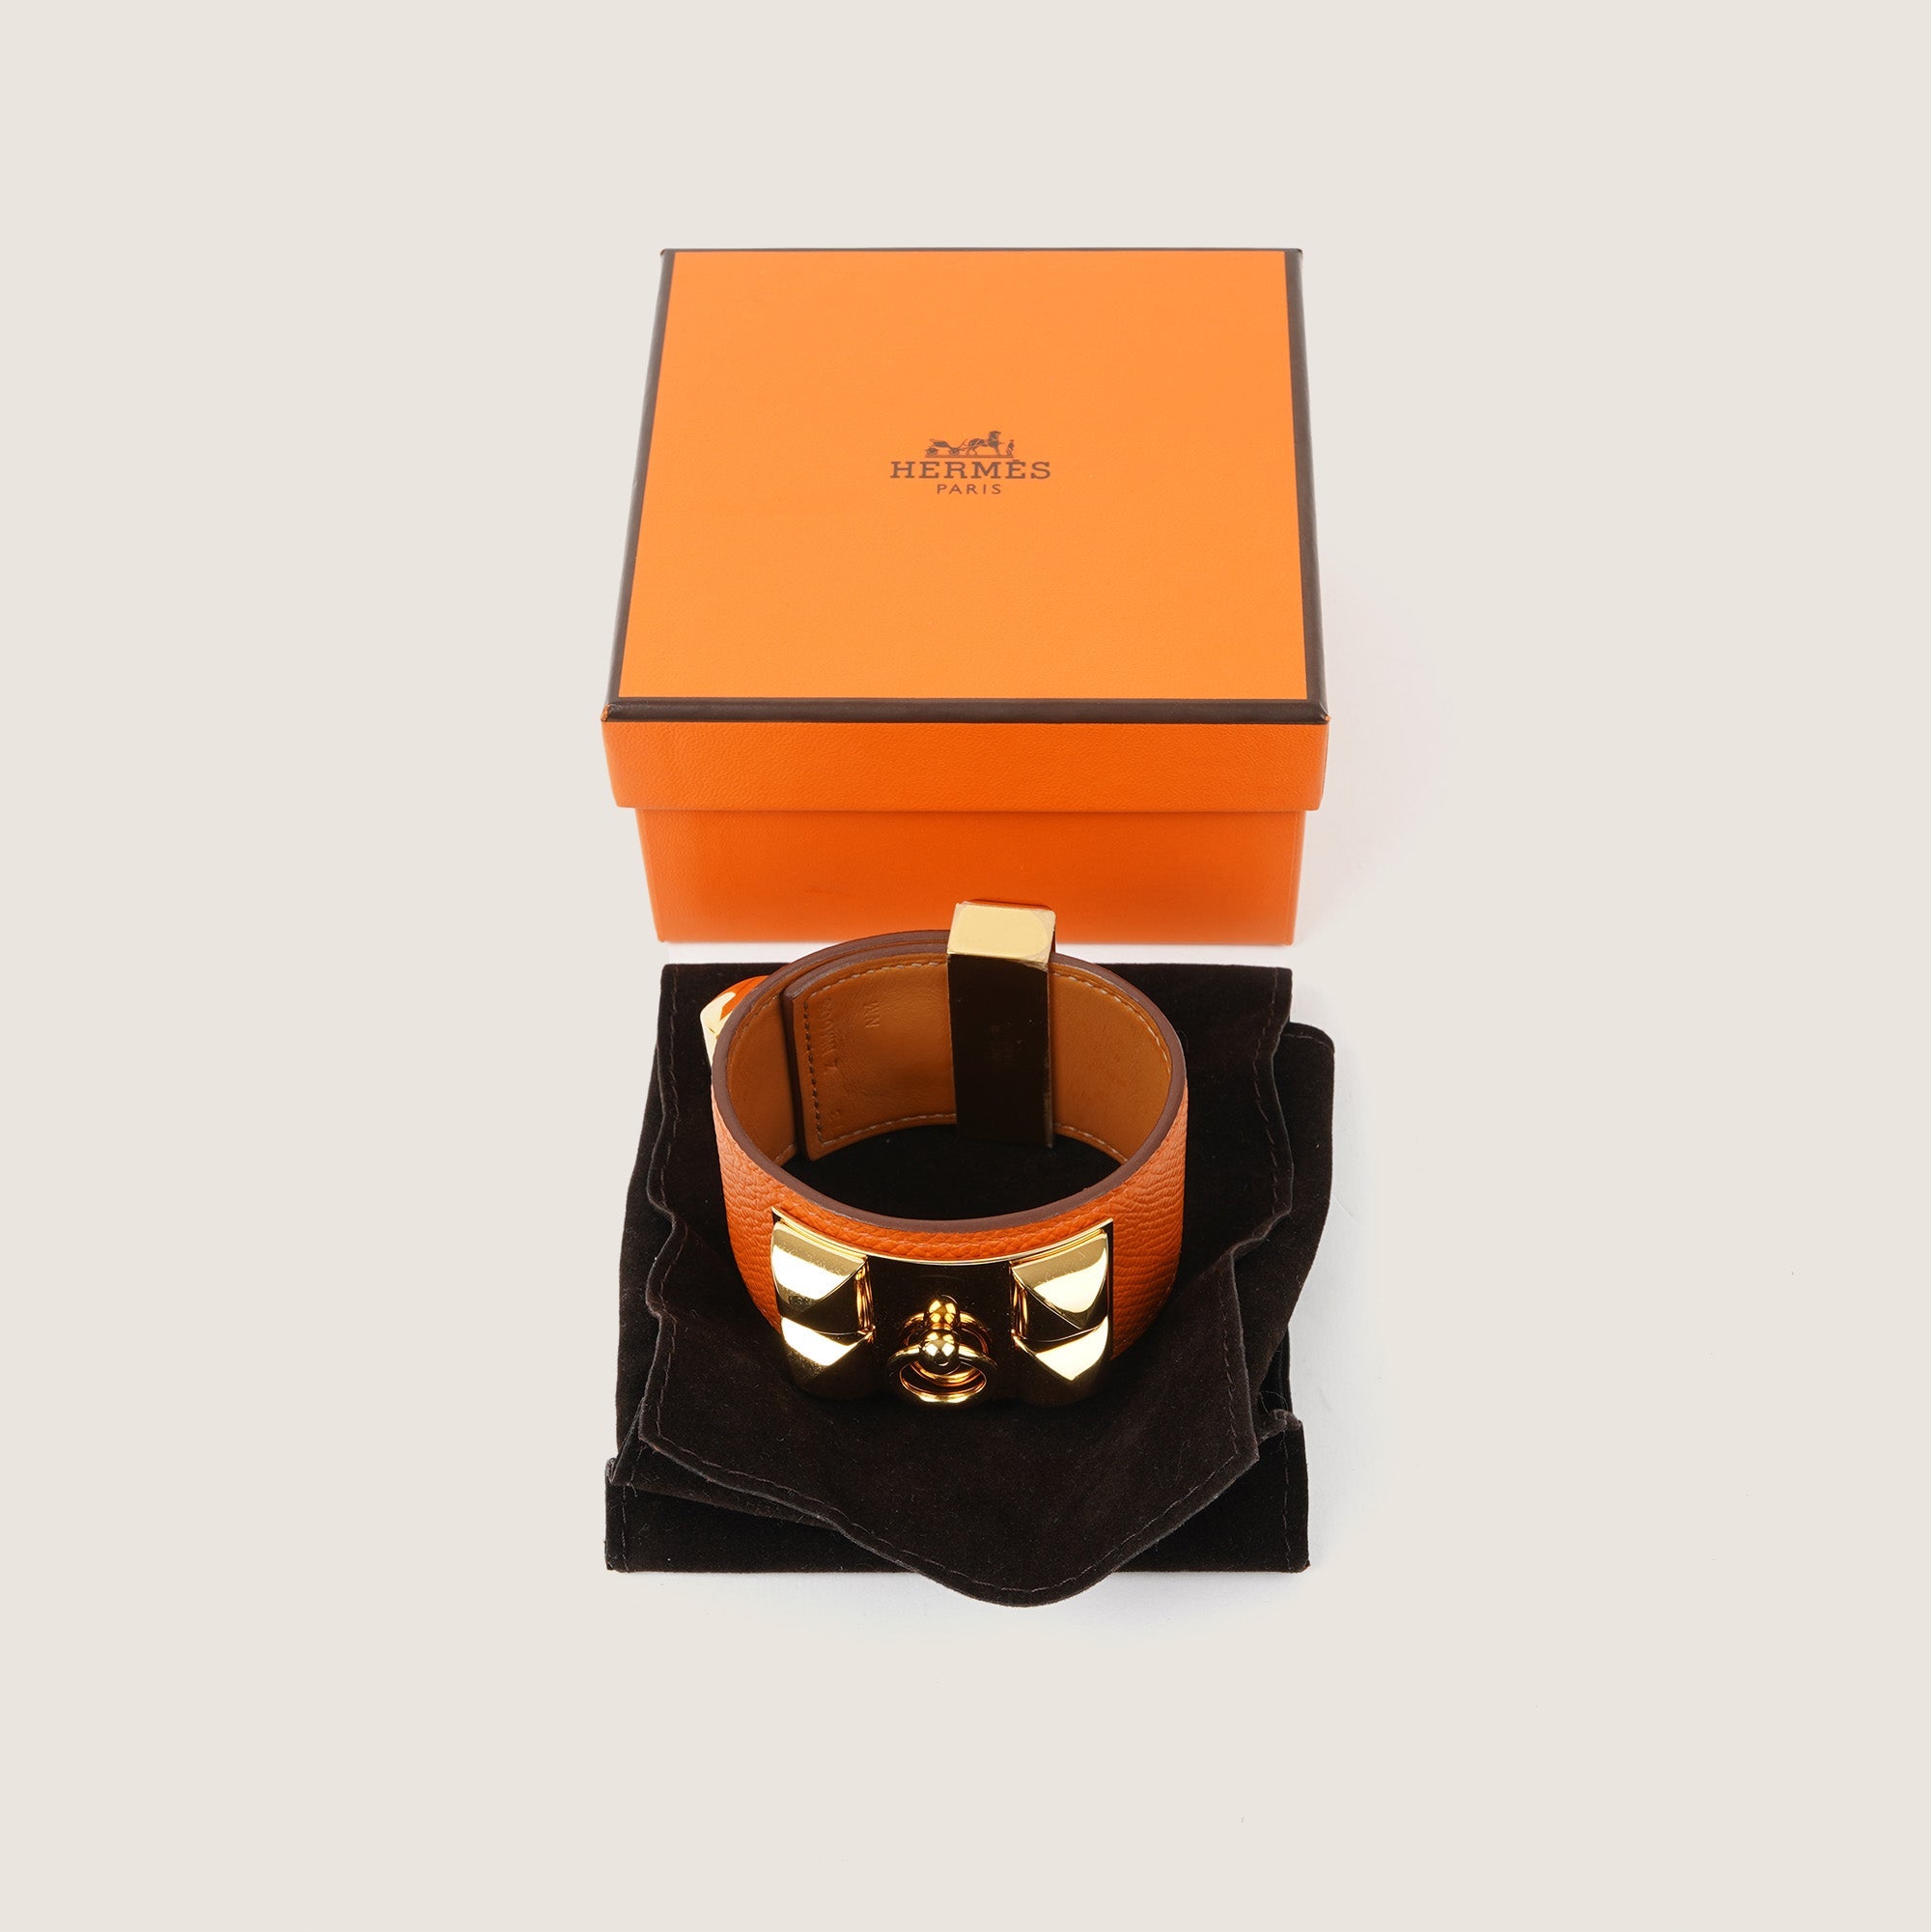 Collier De Chien Bracelet - HERMÈS - Affordable Luxury image